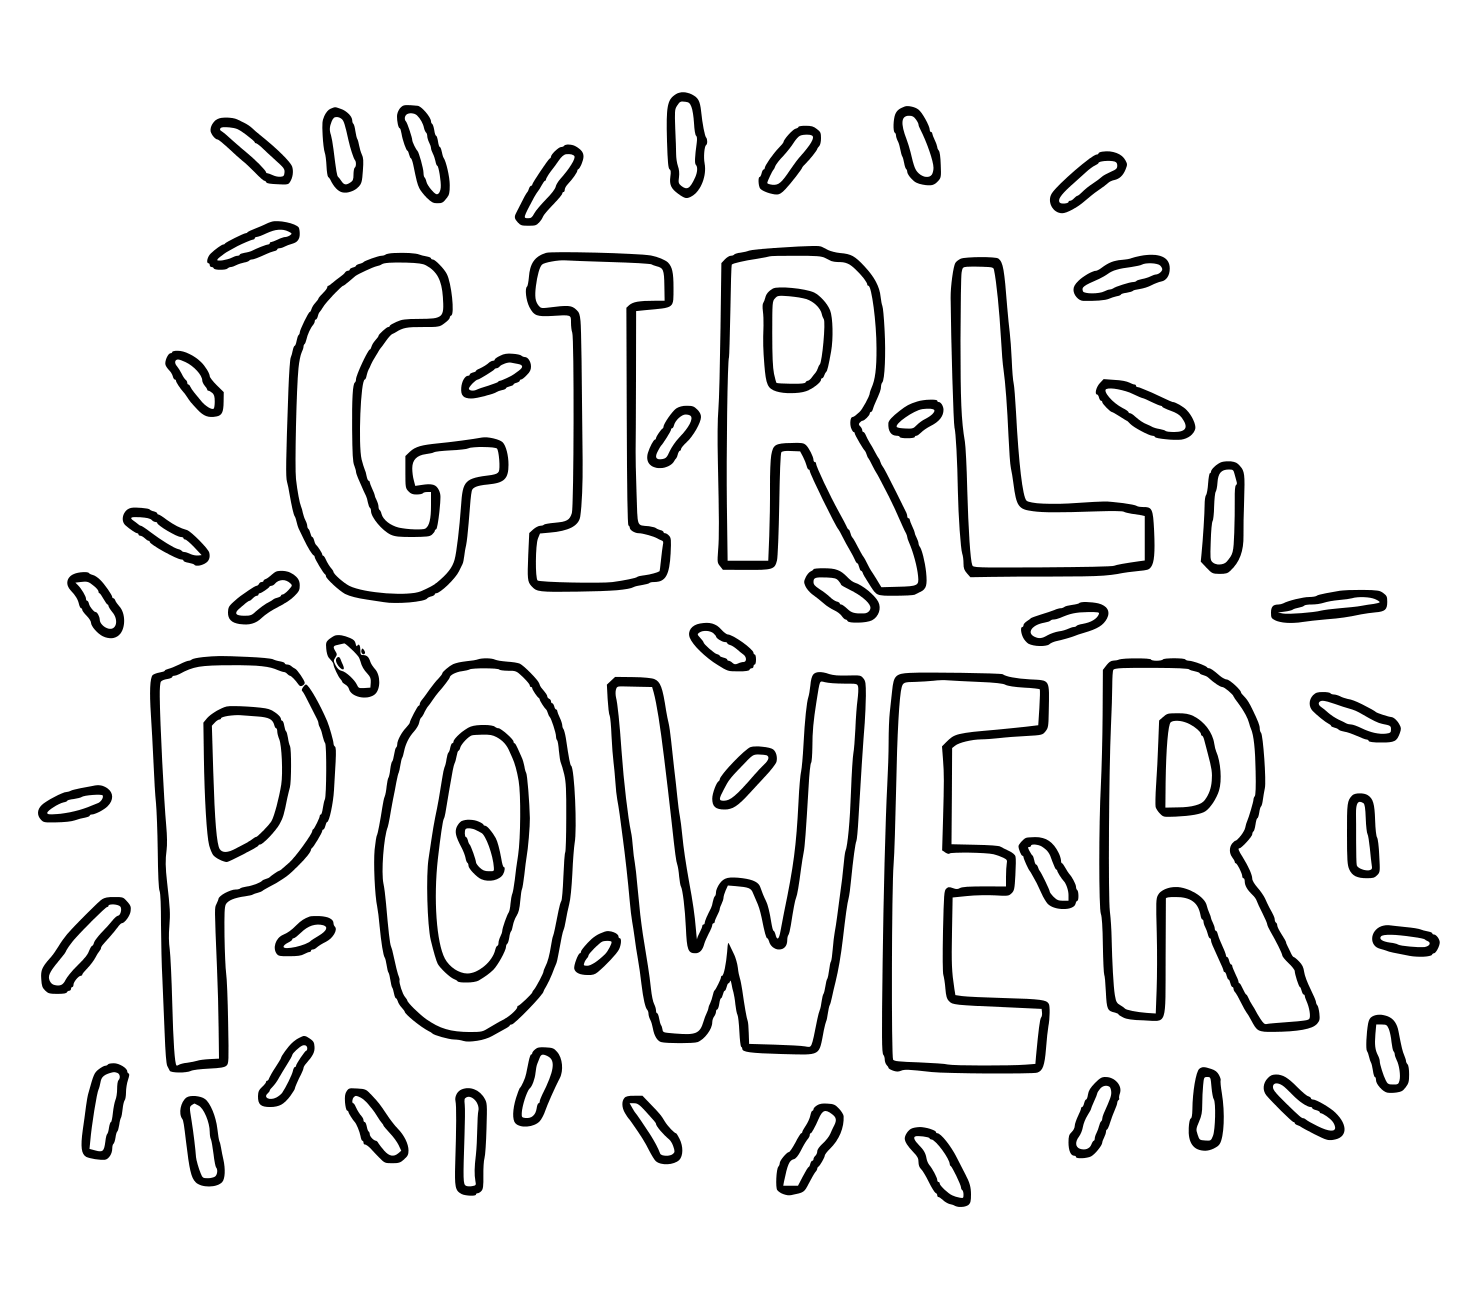 Girl Power Hand Lettering